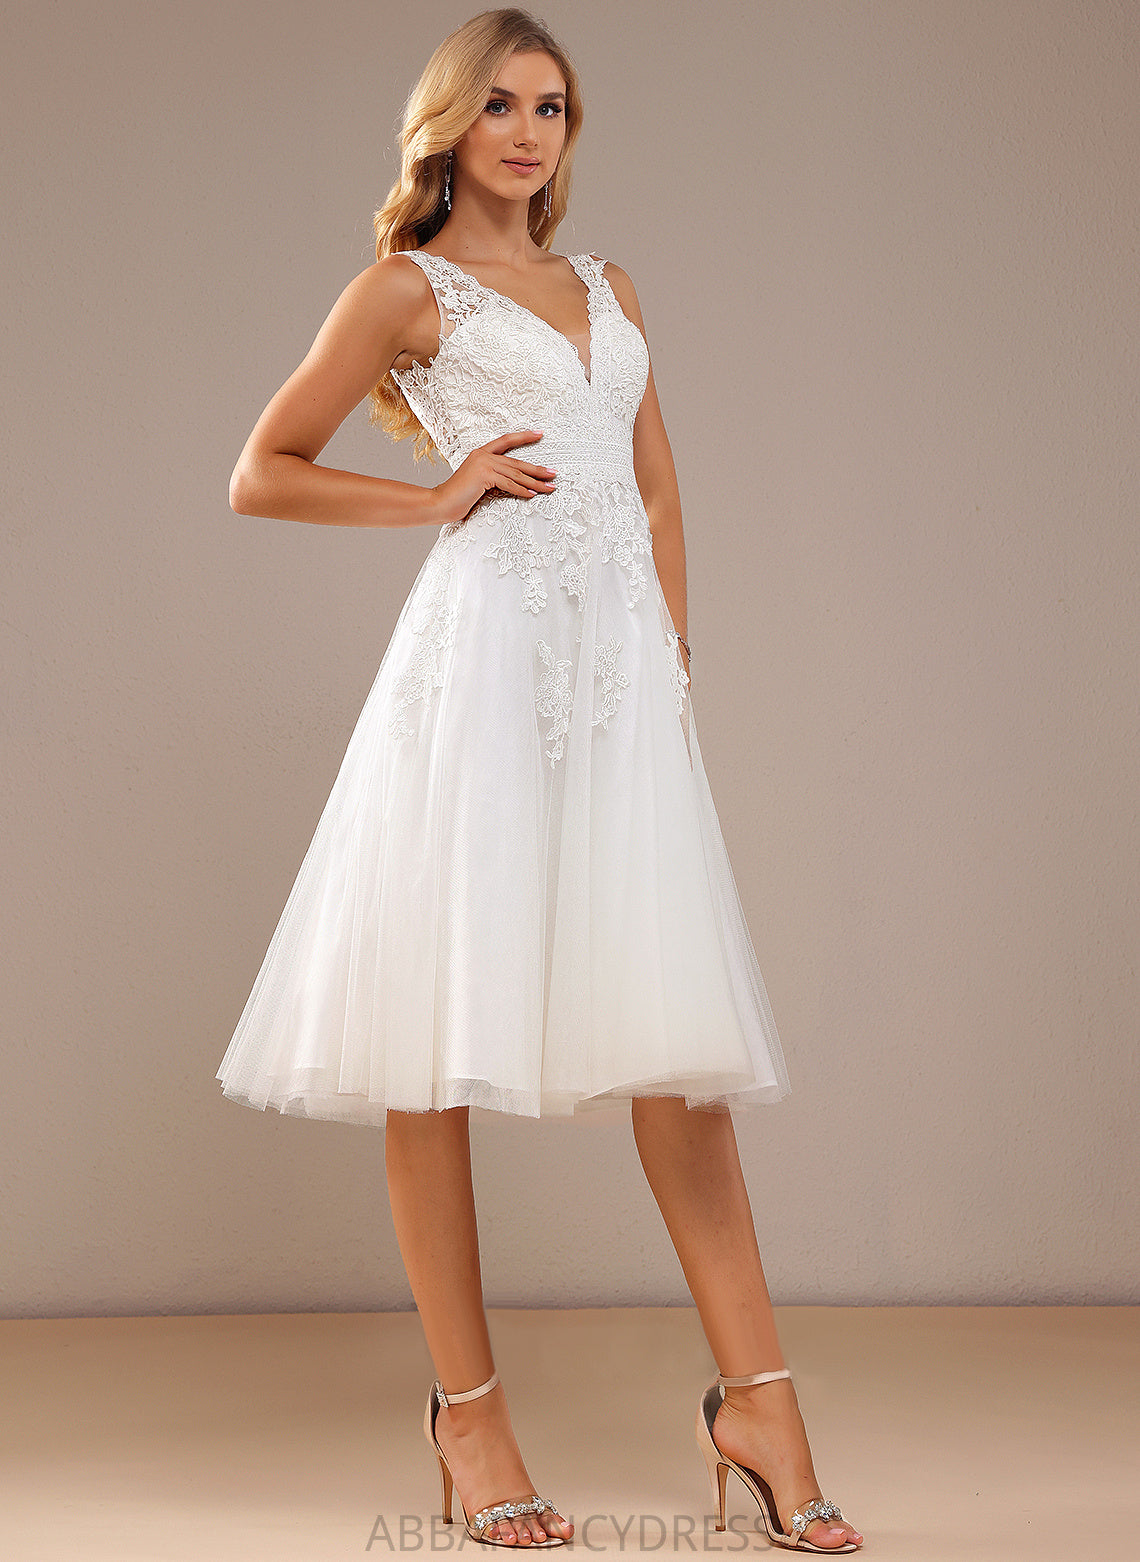 Knee-Length Lace Wedding Dresses Wedding Brooke A-Line Dress V-neck Tulle